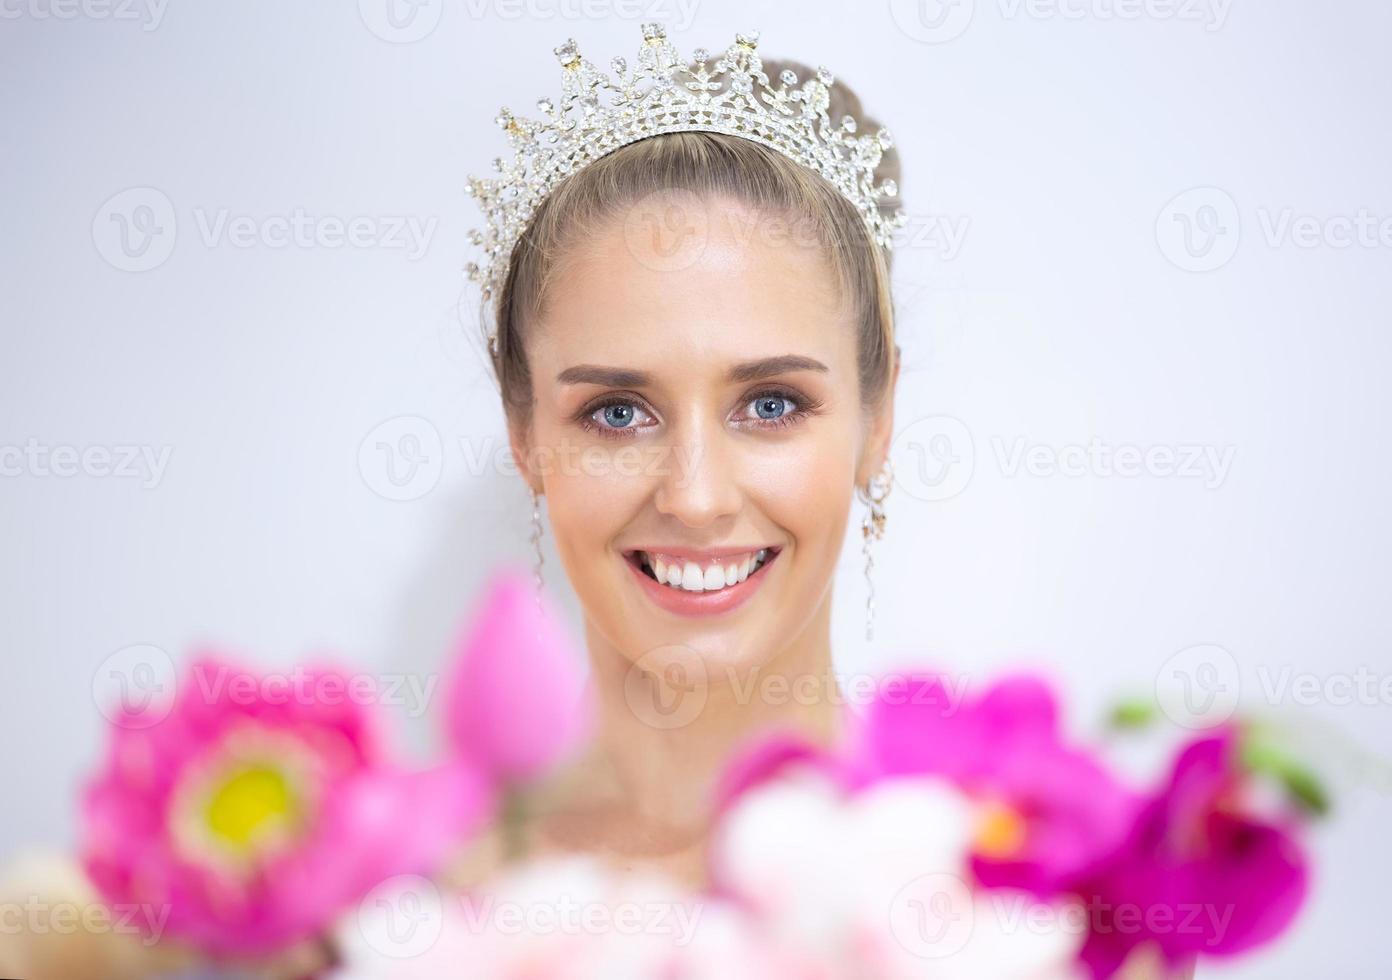 ritratto di giovane donna sorridente su sfondo bianco grigio foto